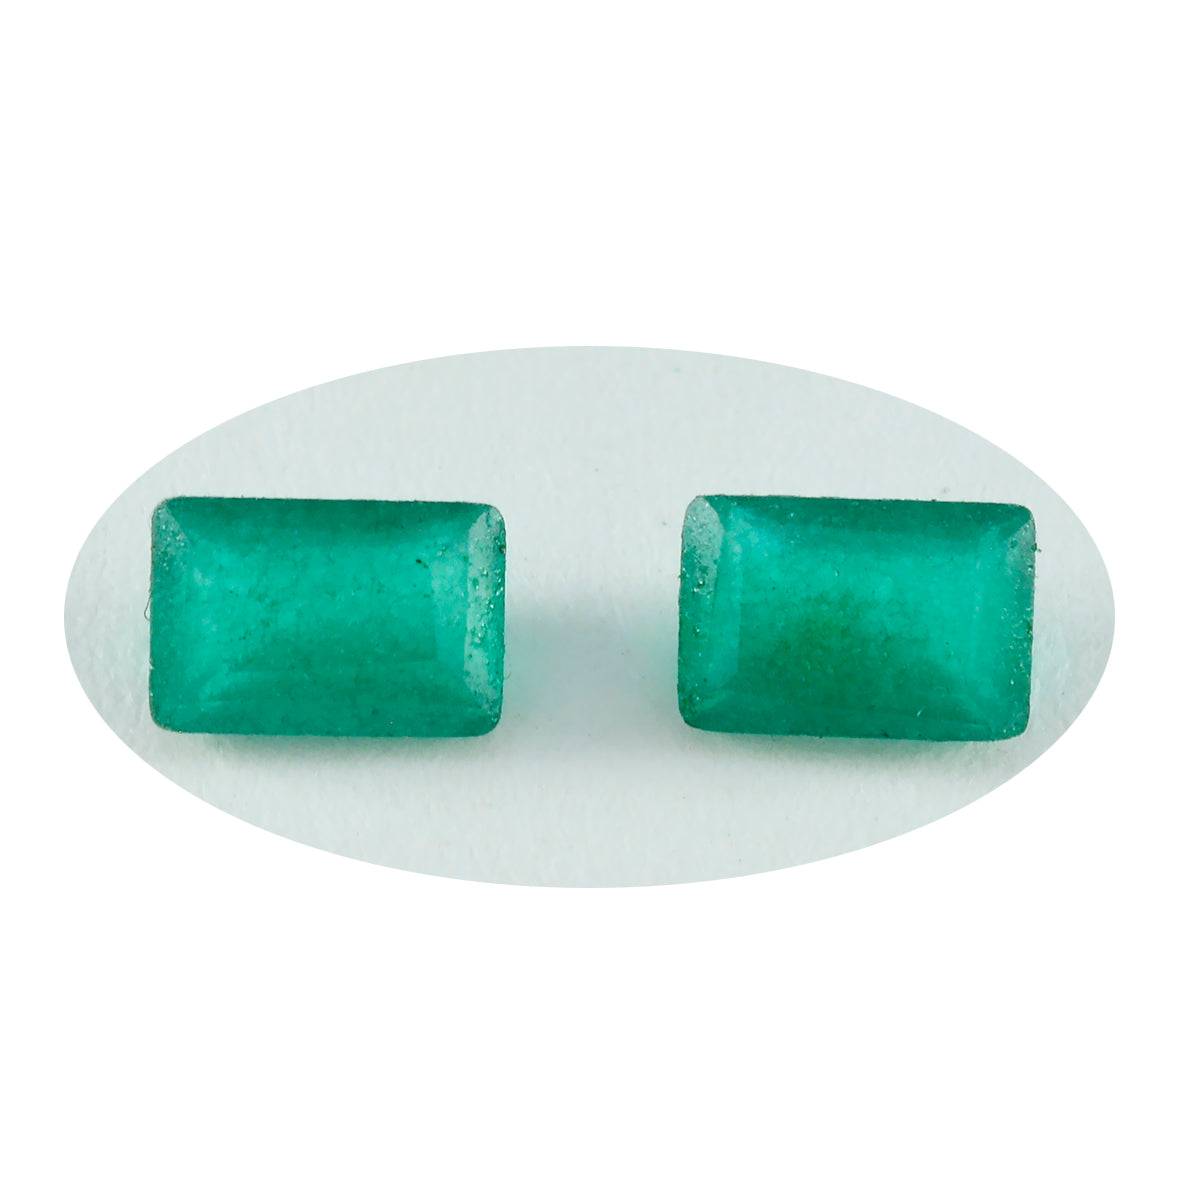 Riyogems 1 Stück natürlicher grüner Jaspis, facettiert, 9 x 11 mm, achteckige Form, verblüffende, hochwertige lose Edelsteine